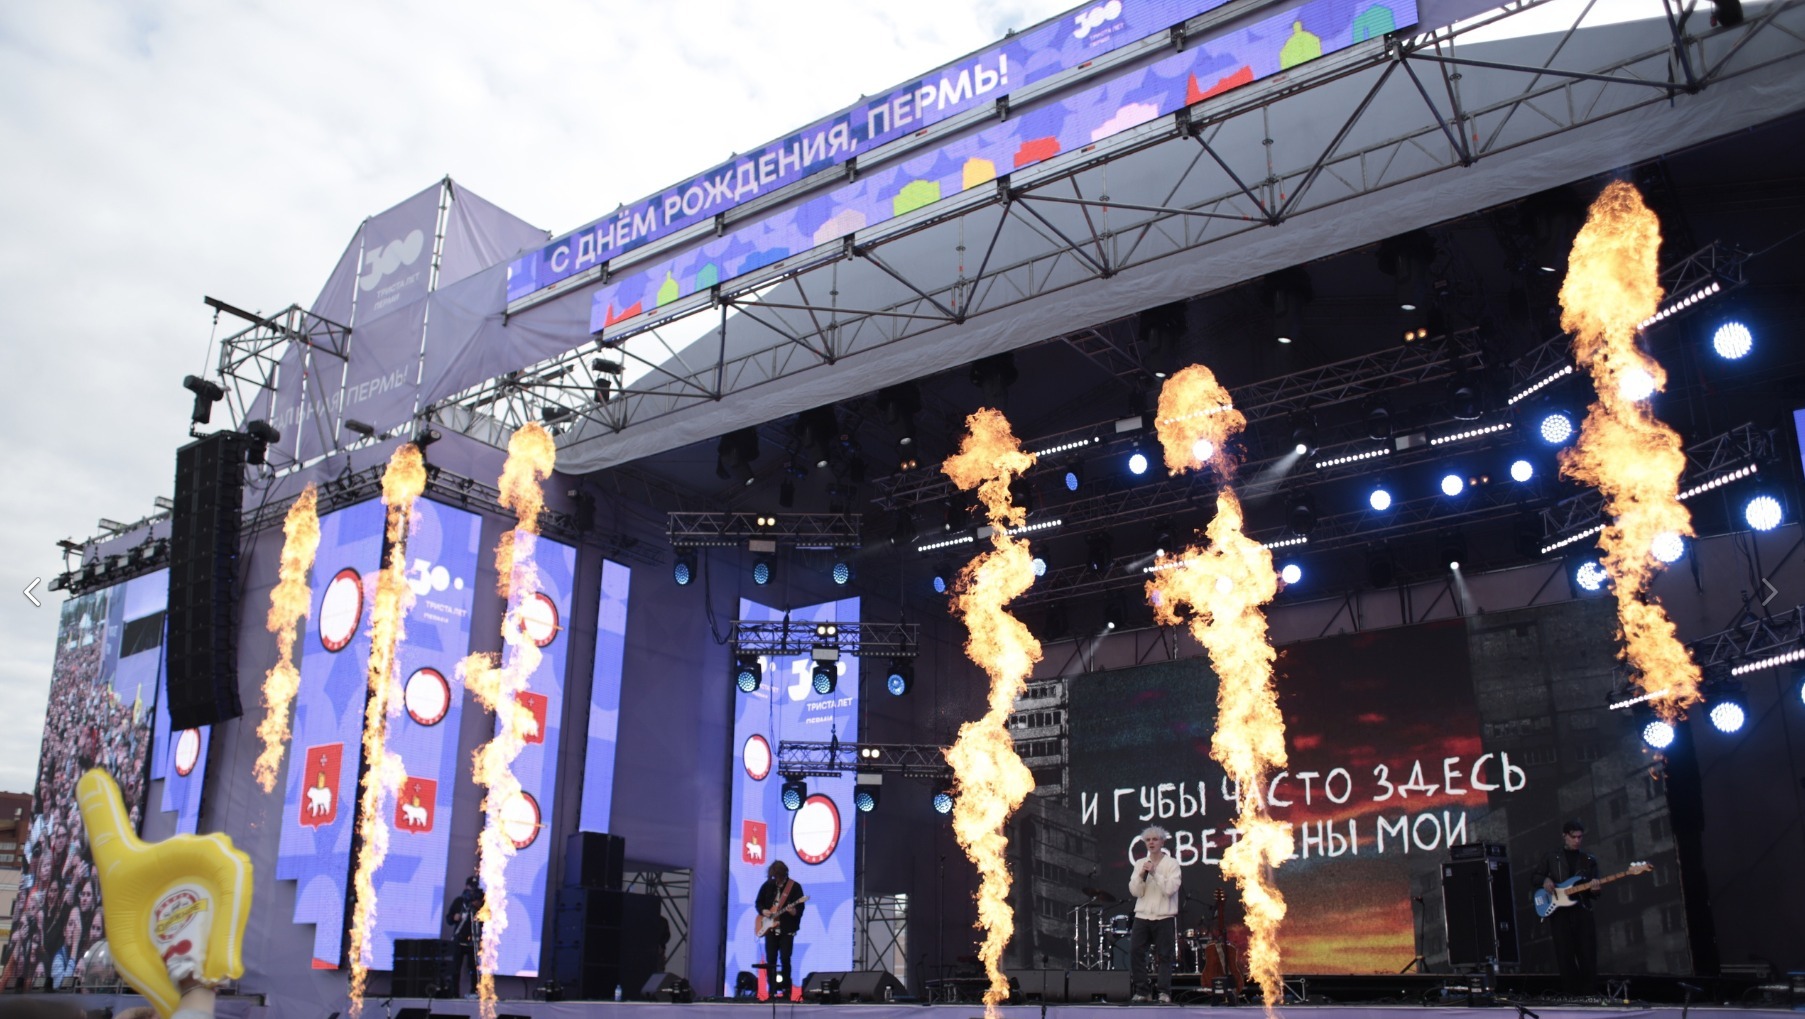 Празднование юбилея Пермь 12 июня посетили около 300 тысяч человек